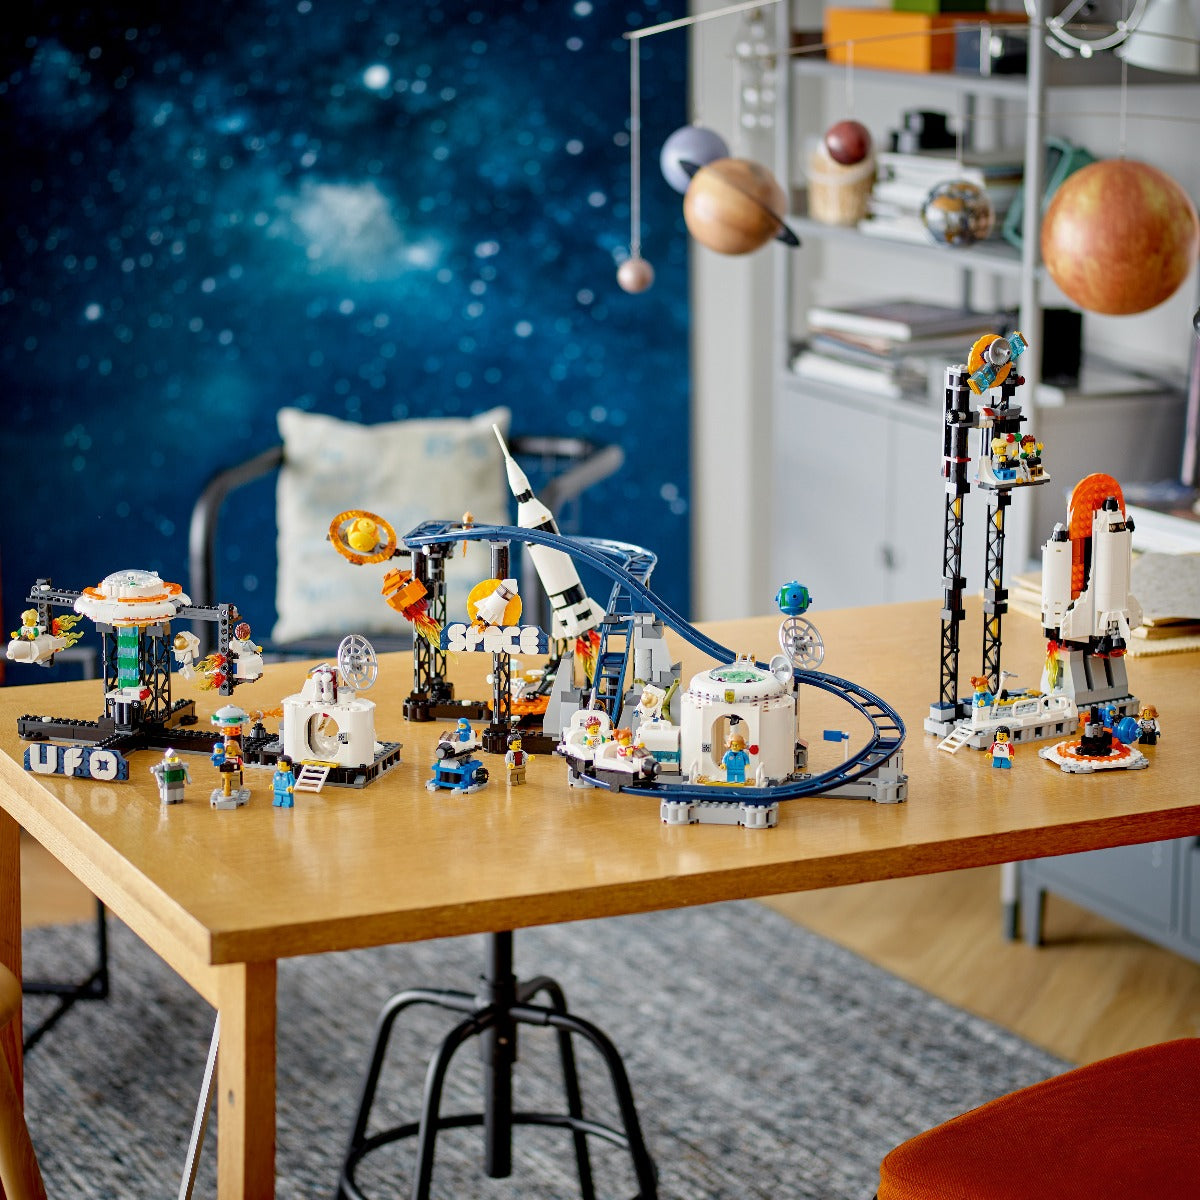 Đồ chơi lắp ráp Tàu lượn siêu tốc không gian LEGO CREATOR 31142